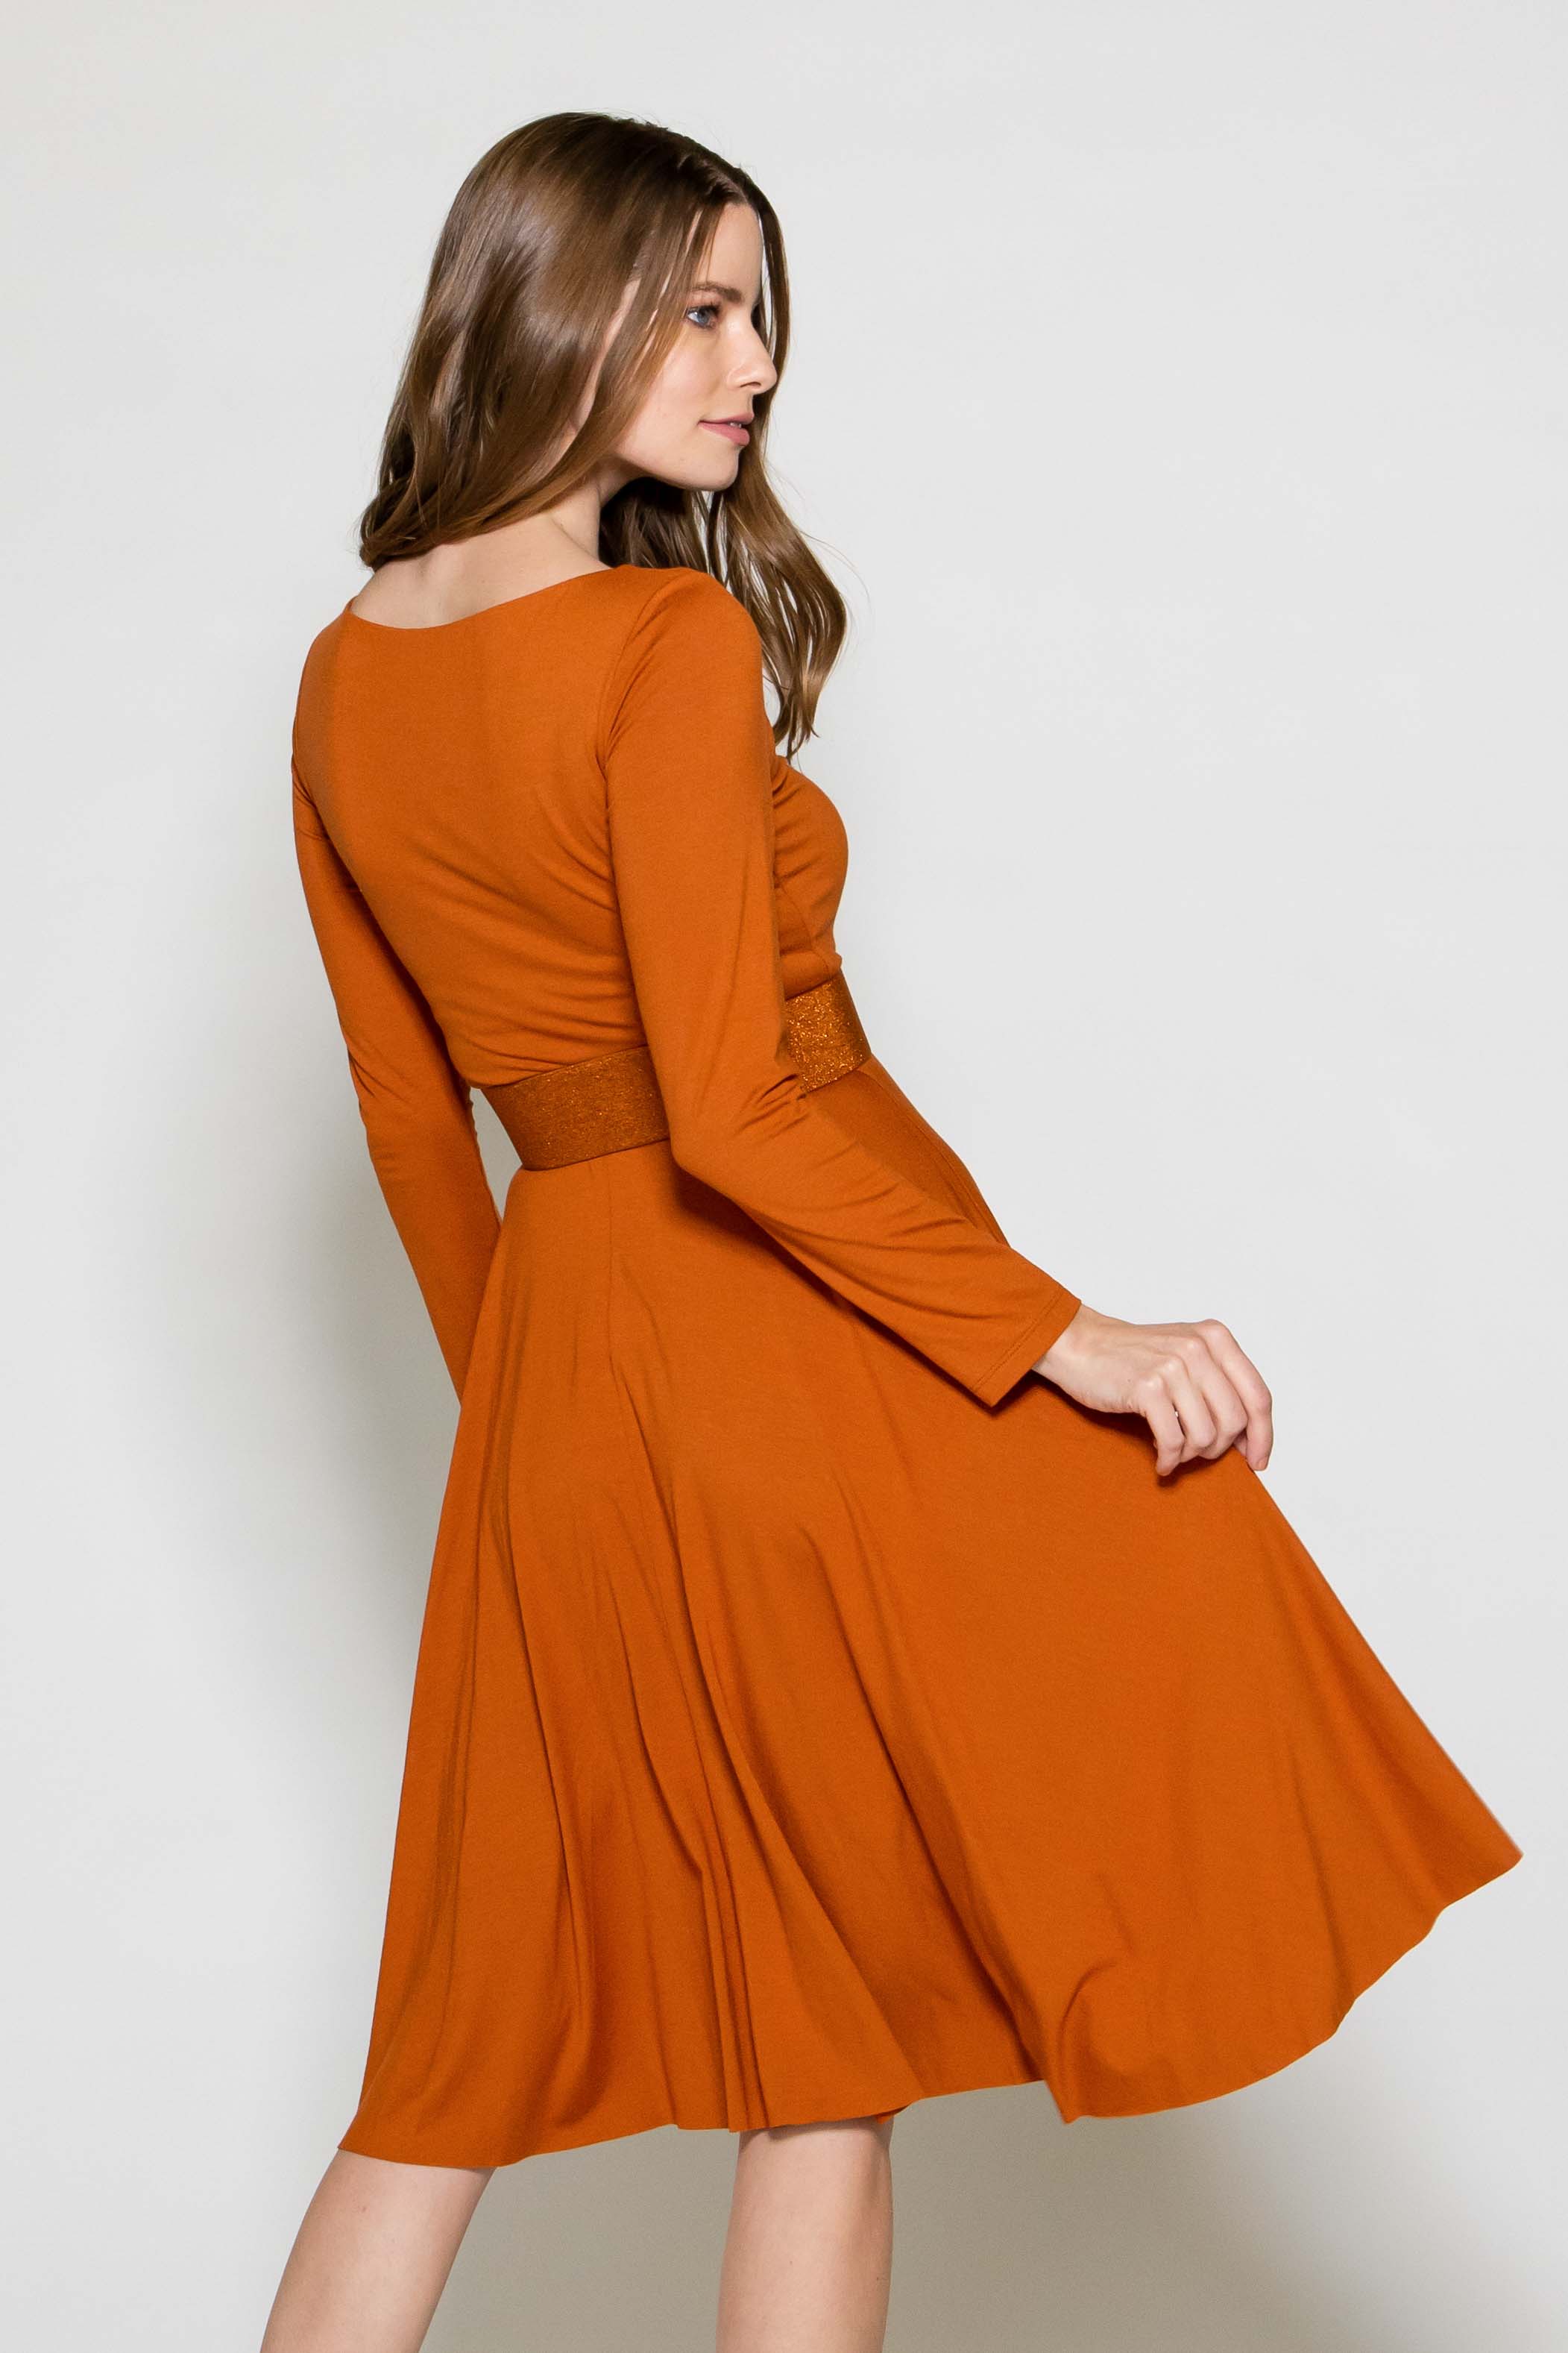 Marisé Eco . Couture DRESSES Venice Orange Long Sleeve Dress